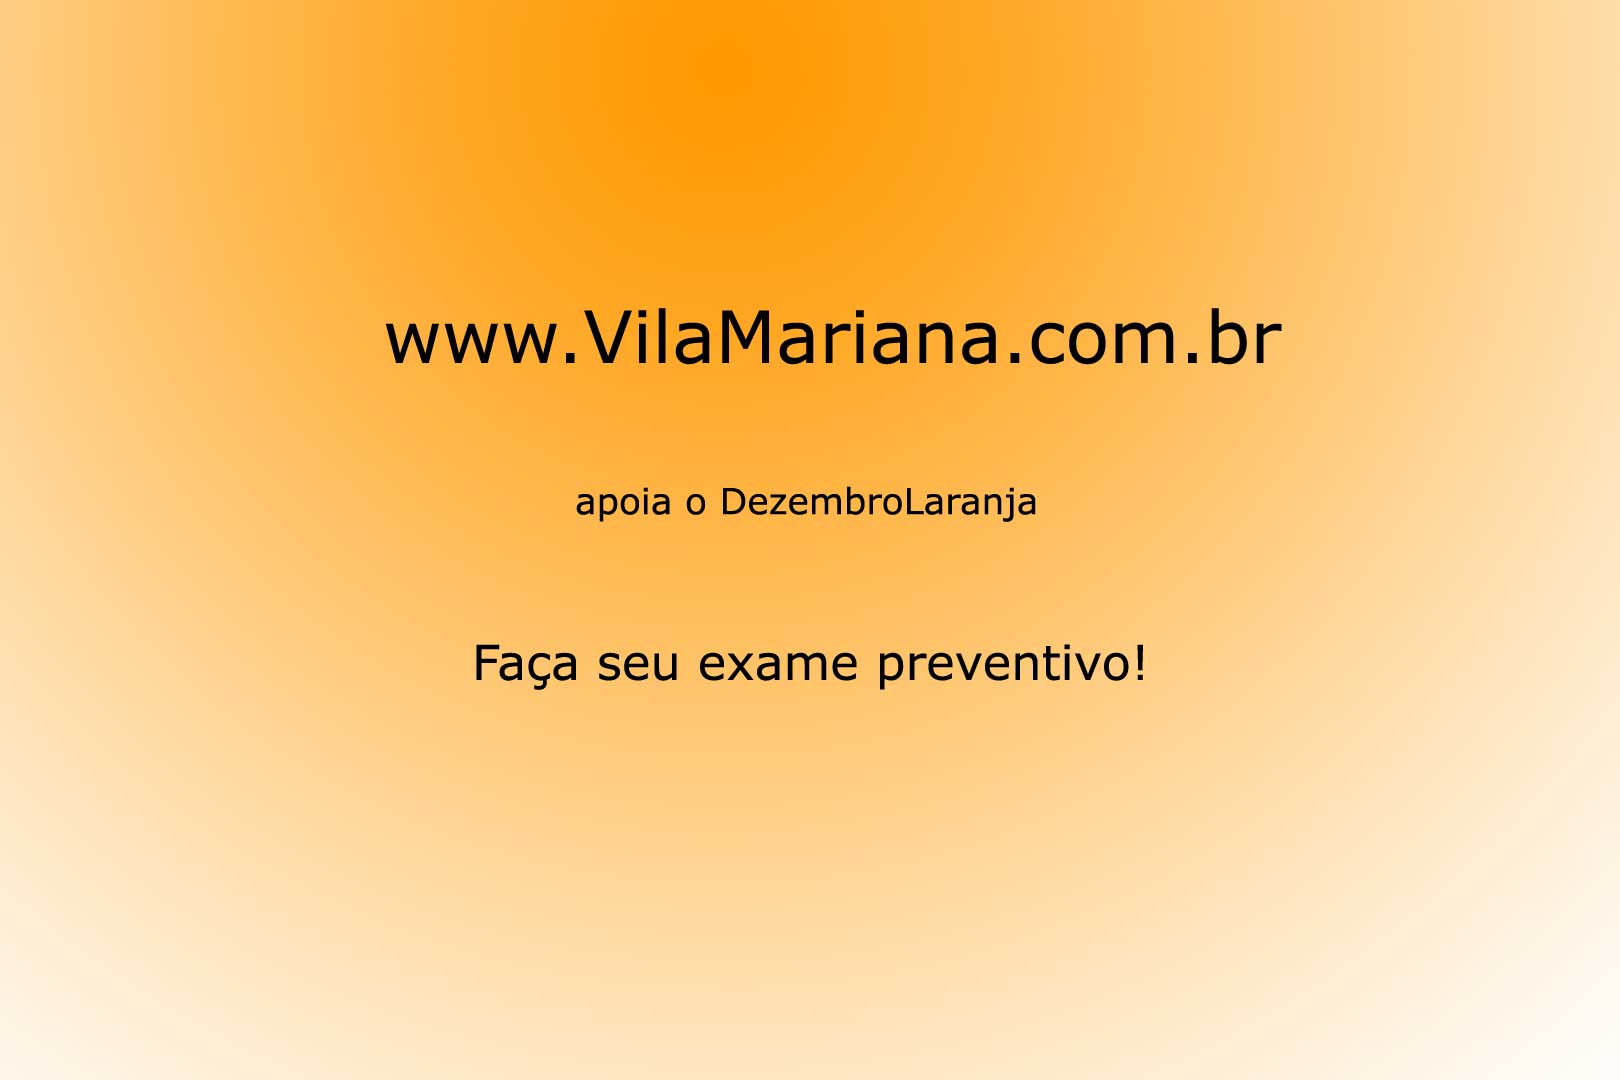 SBD - Sociedade Brasileira de Dermatologia